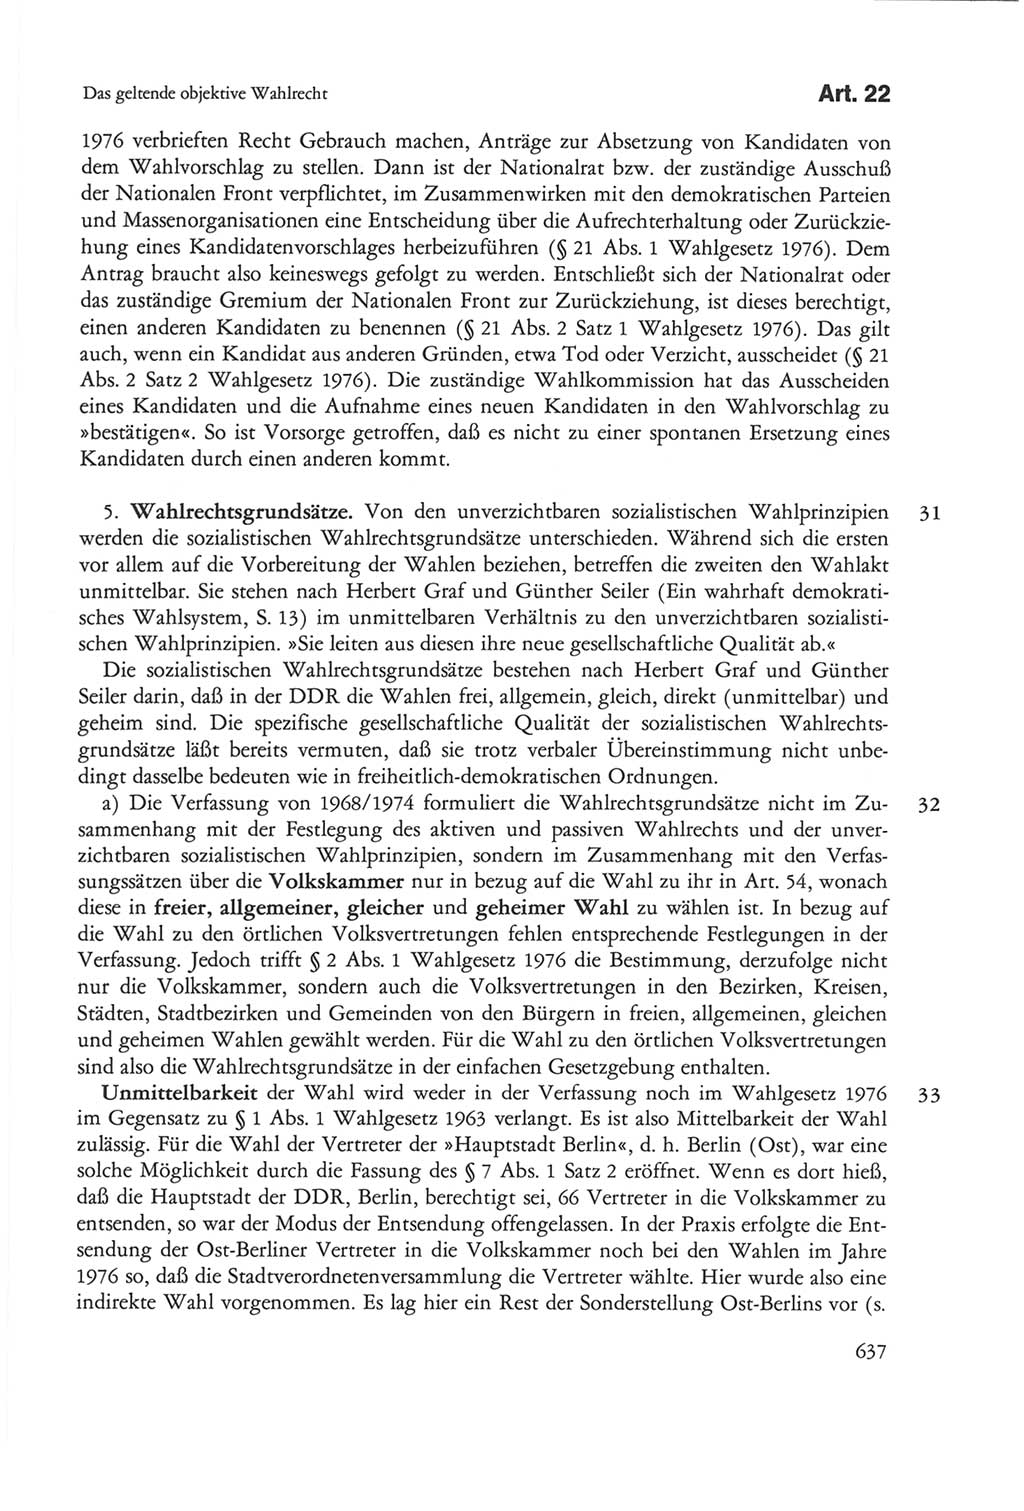 Die sozialistische Verfassung der Deutschen Demokratischen Republik (DDR), Kommentar 1982, Seite 637 (Soz. Verf. DDR Komm. 1982, S. 637)